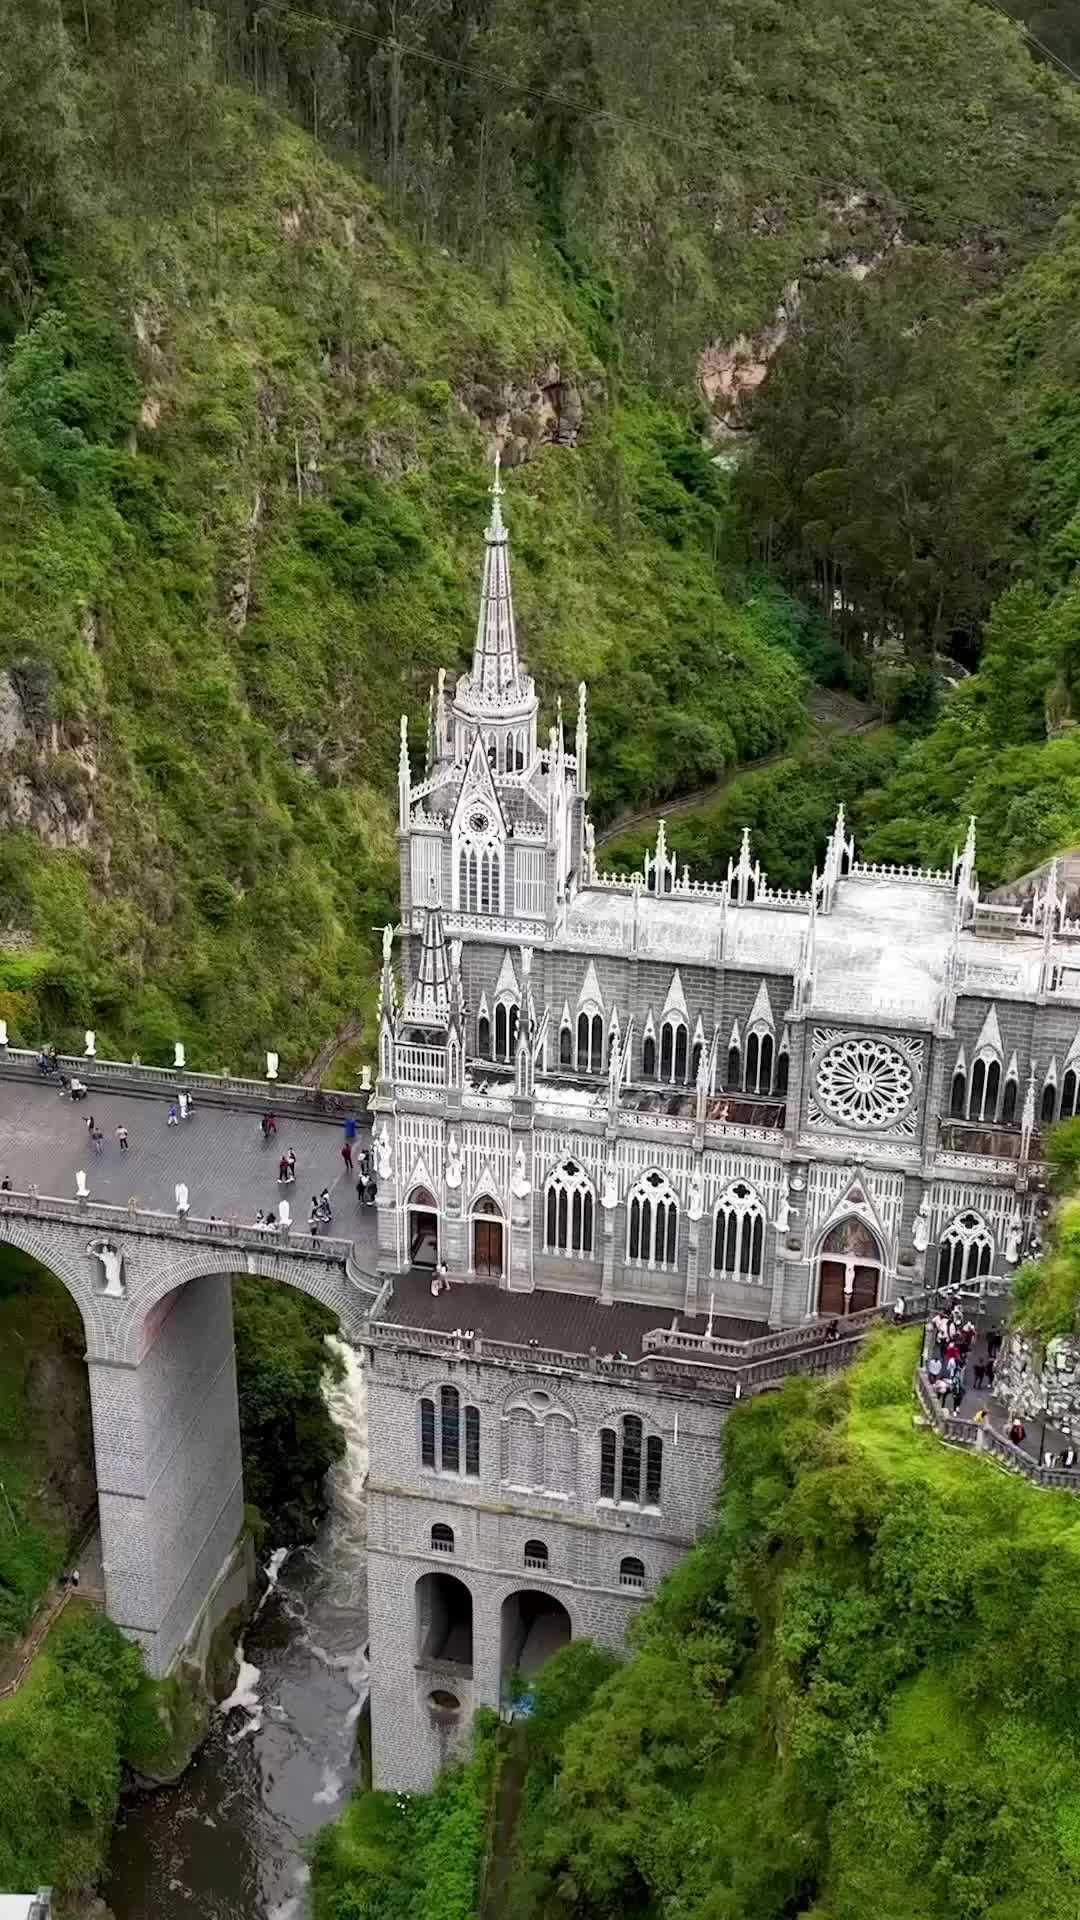 El Santuario de Las Lajas in Ipiales, Nariño, Colombia ⛪️🇨🇴
.
.
.
.
.
#laslajas#colombia#ipiales#ipialesnariño#nariño#colombiatravel#colombia_greatshots#kolumbien#visitcolombia#explorecolombia#southamerica#dronephotography#travel#worldwalkerz